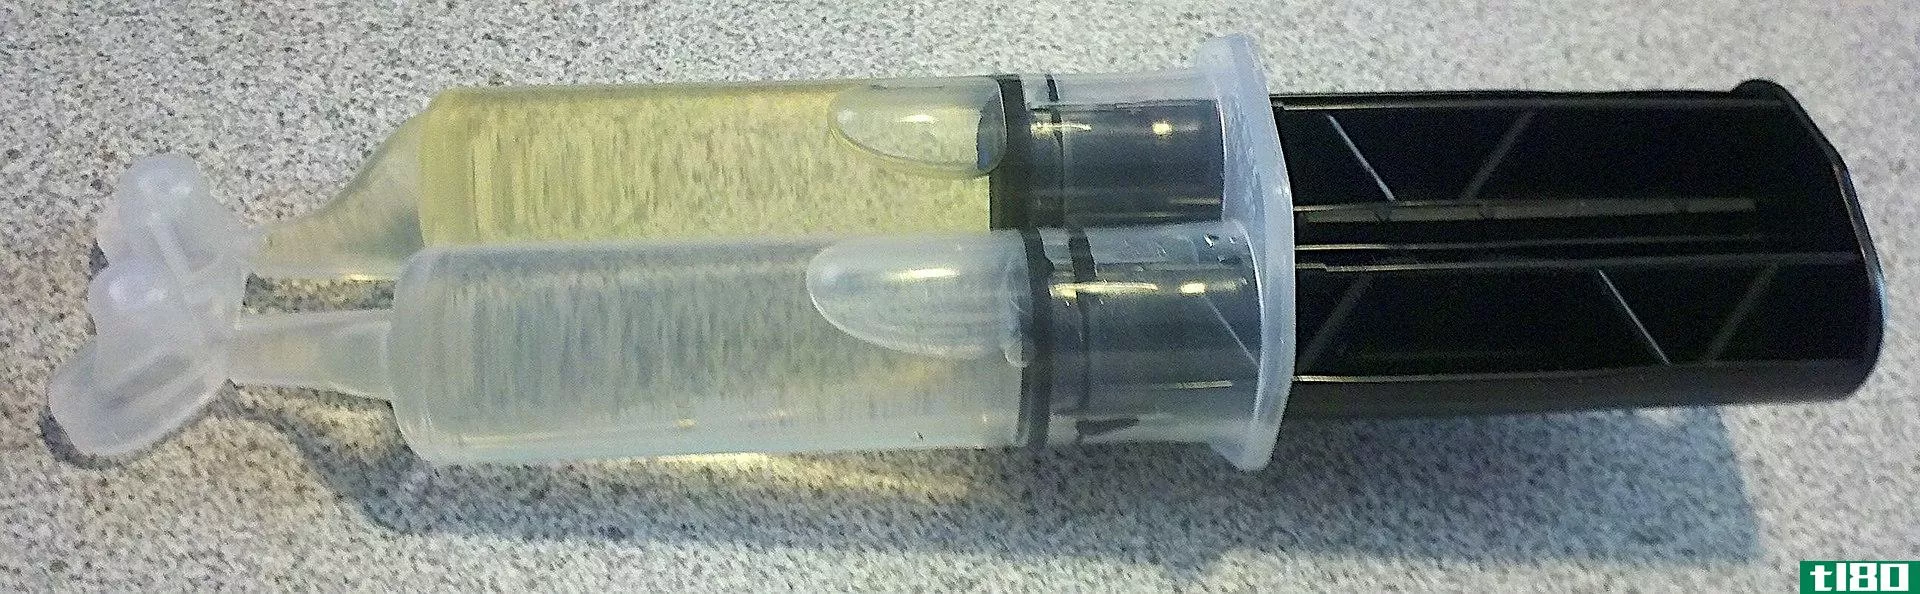 环氧树脂(epoxy)和玻璃纤维树脂(fiberglass resin)的区别